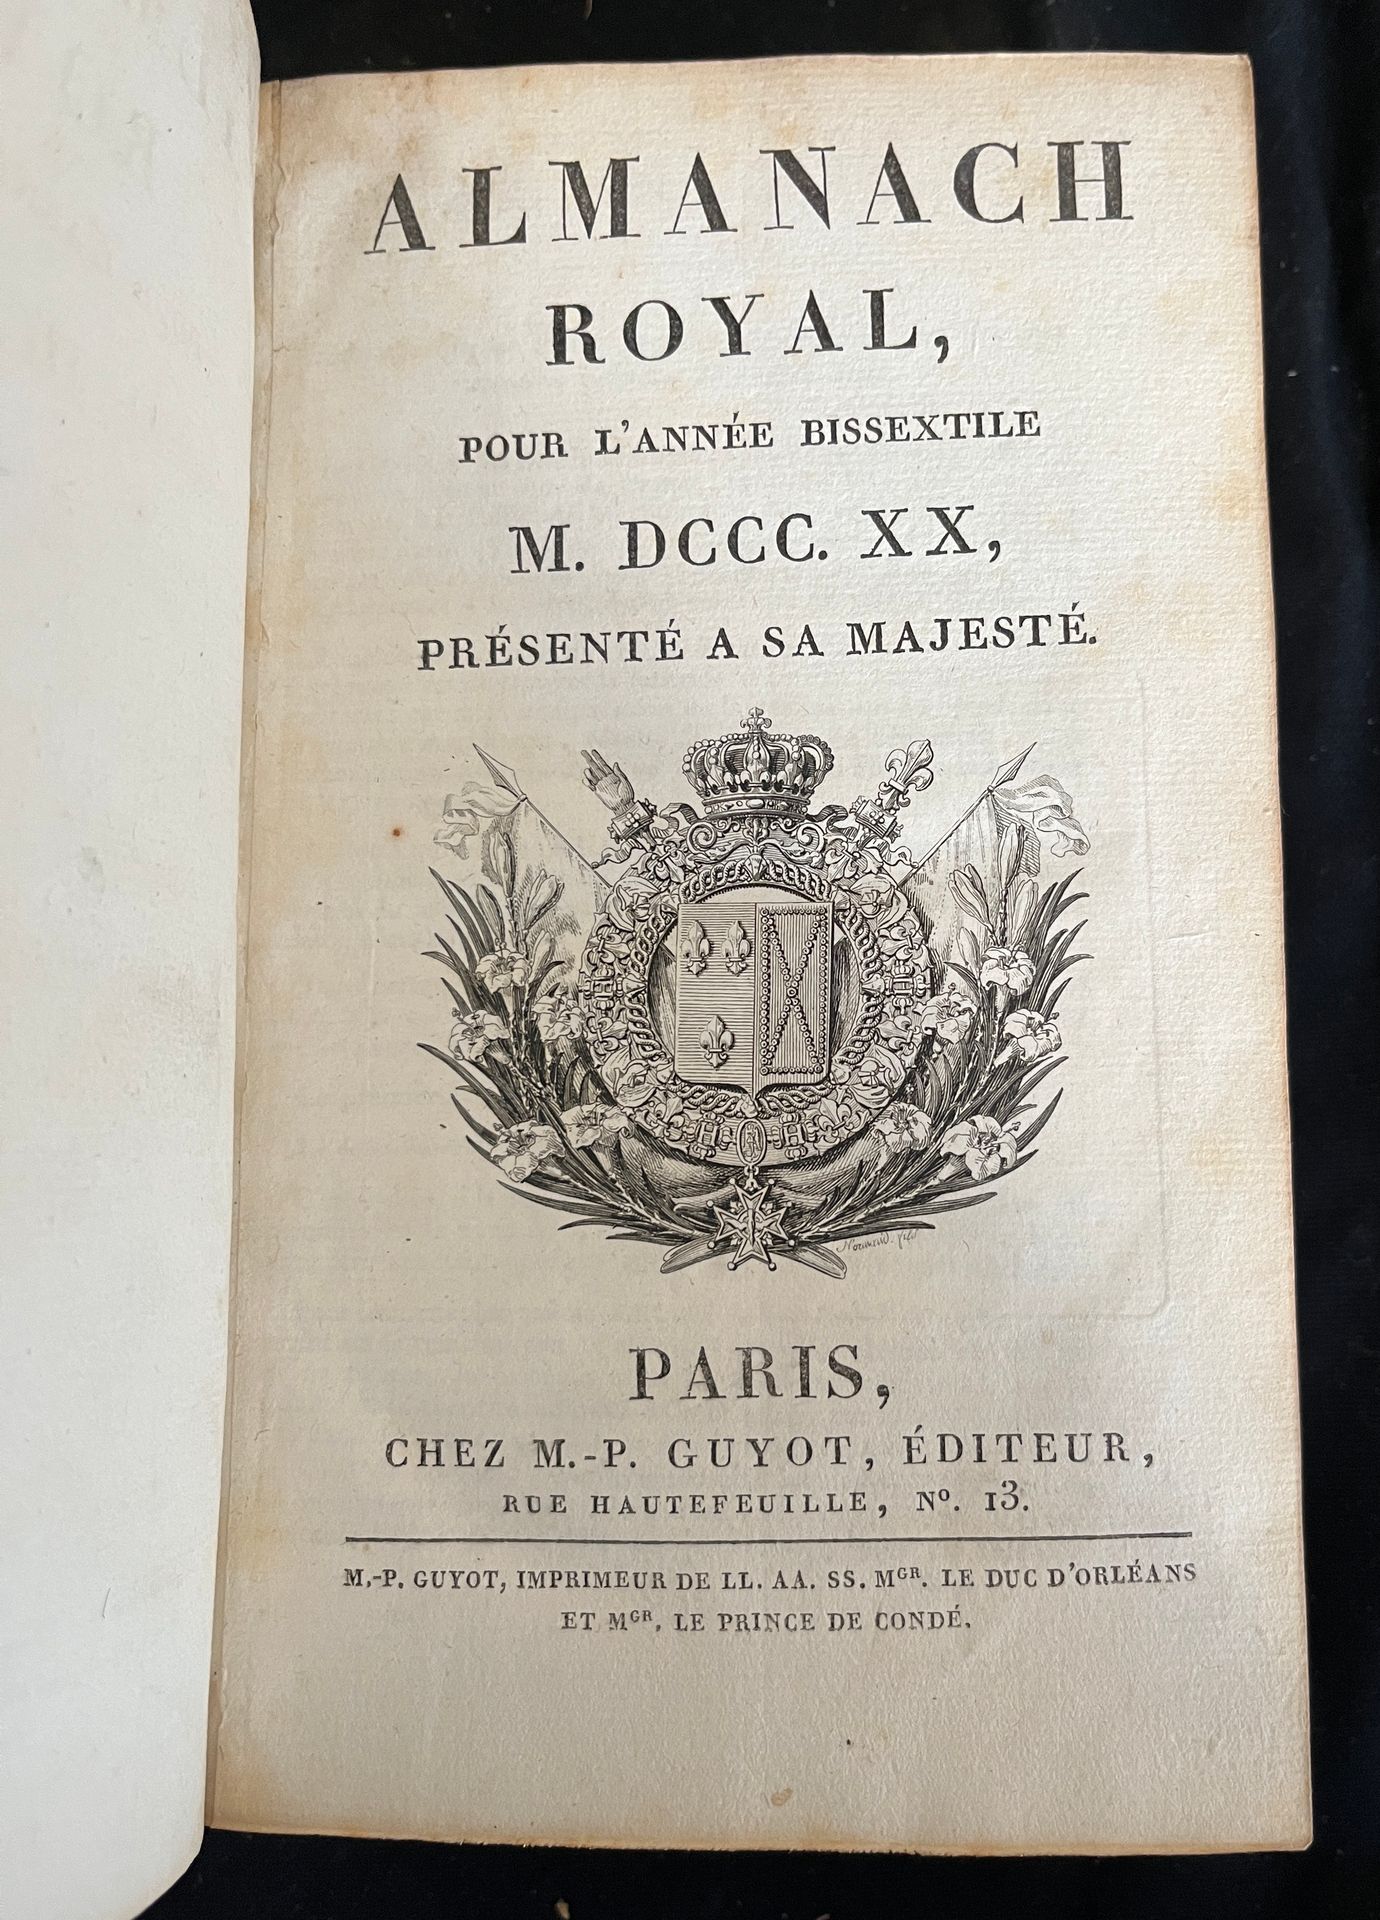 Null [ALMANACCO]
Almanacco reale per l'anno bisestile 1820. Parigi, chez M.-P.Gu&hellip;